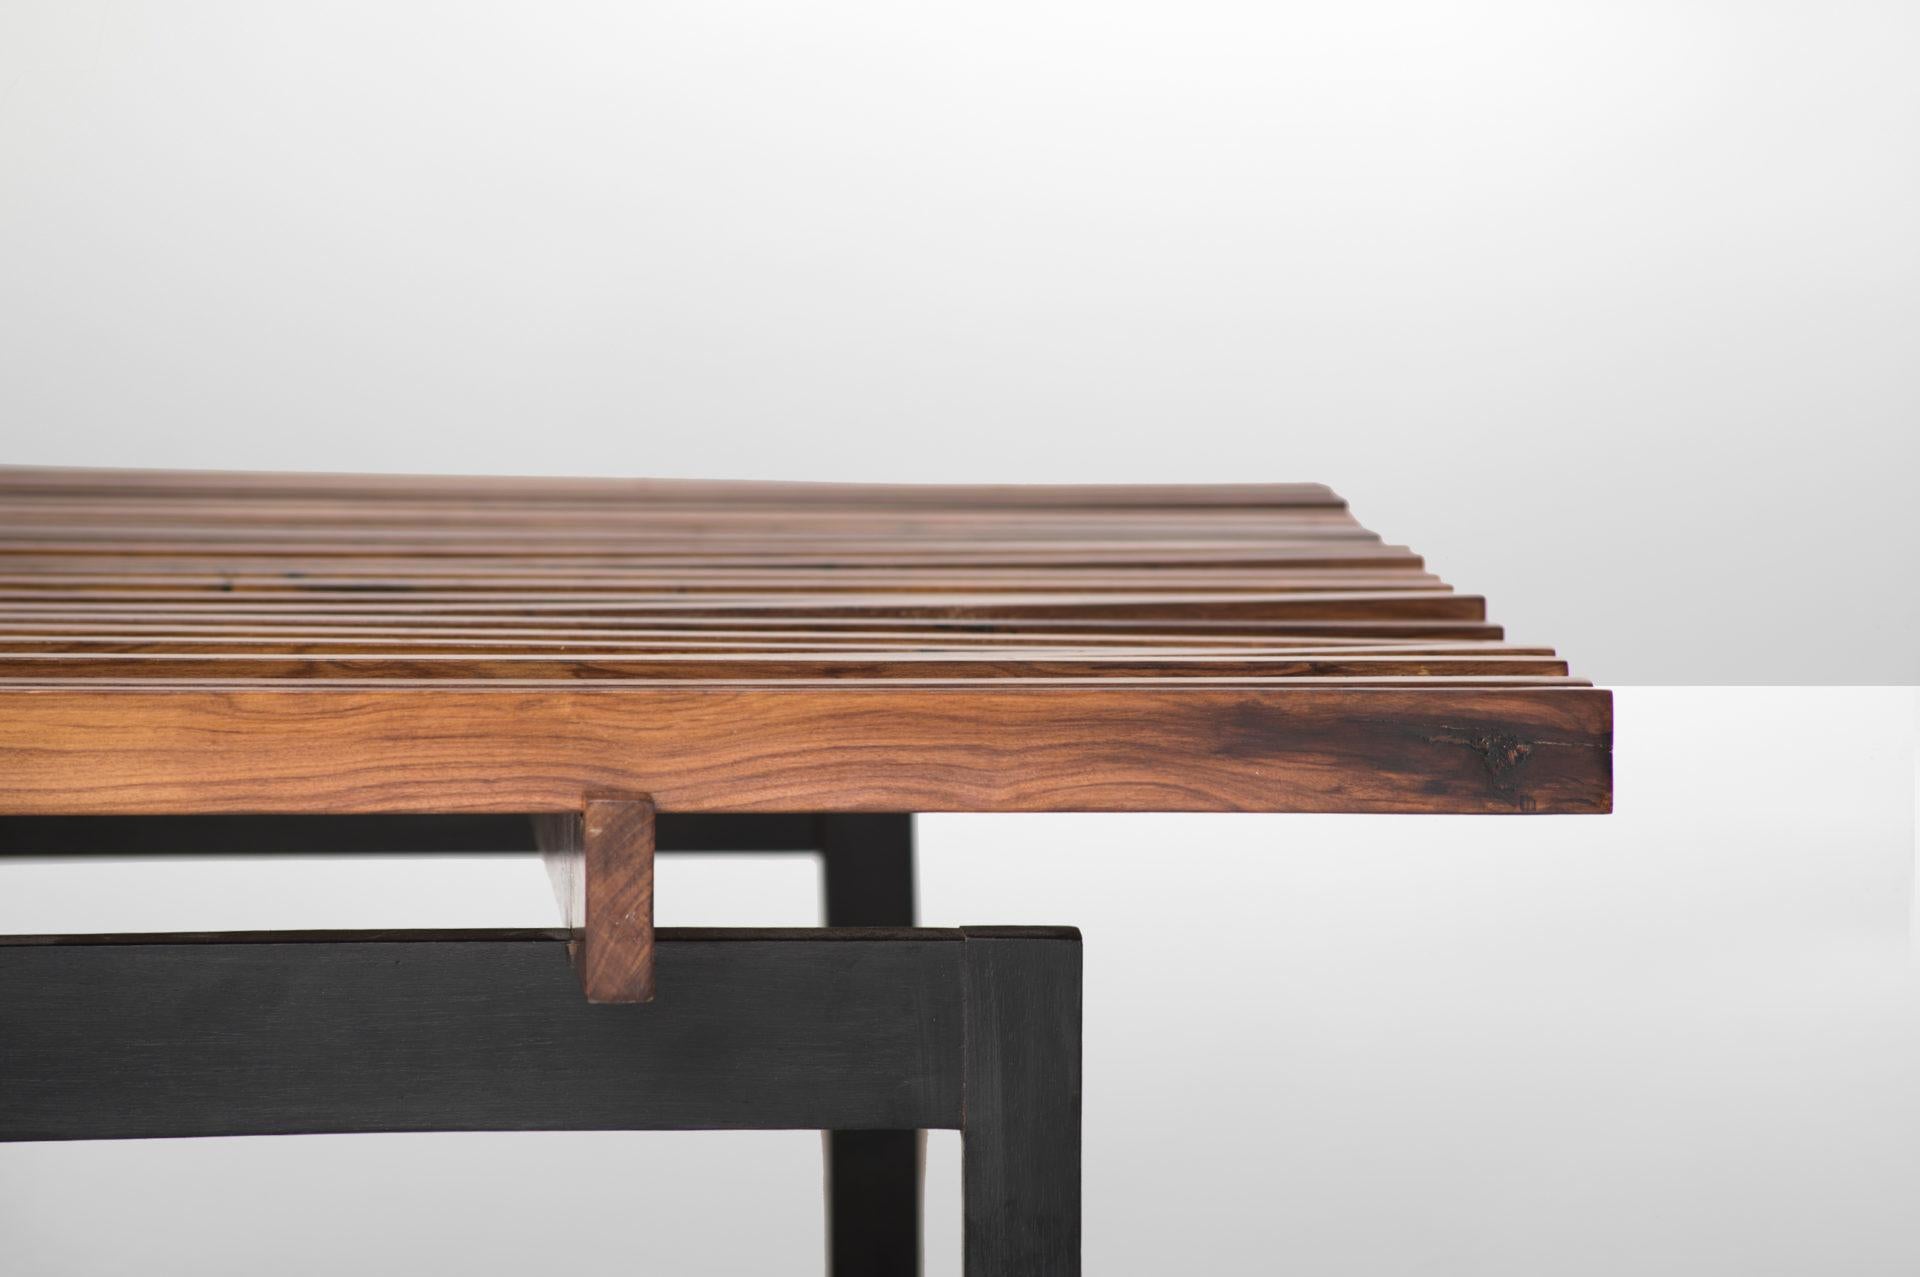 Branco & Preto
Table basse
Mesures
180 cm x 90 cm x 33h cm 
70,86 in x 35,43 in x 13h in